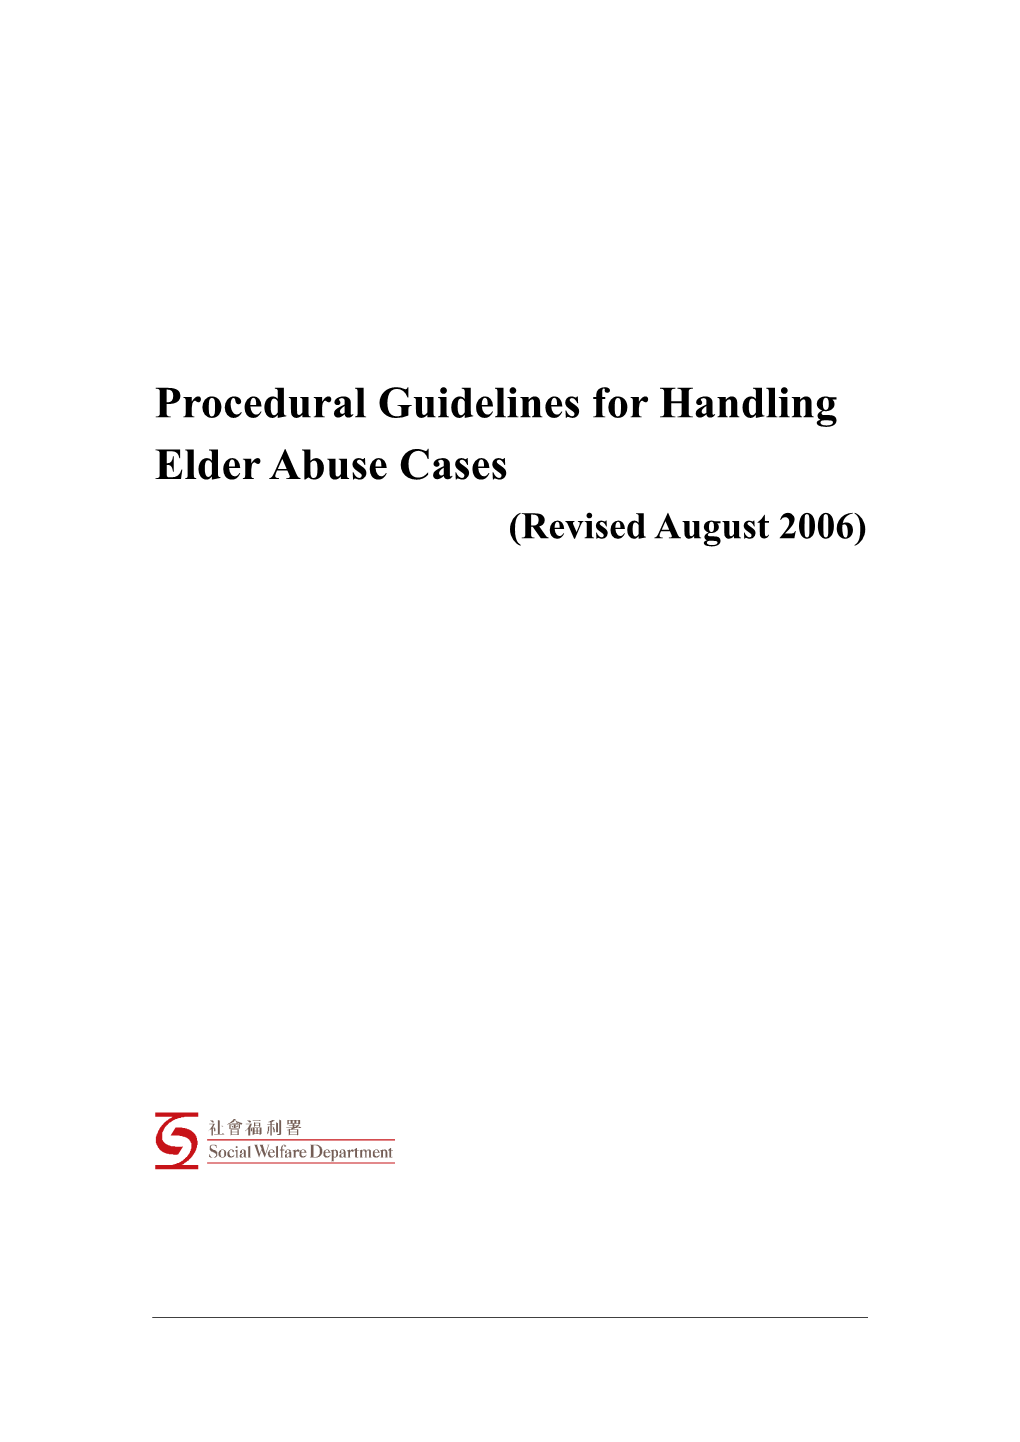 Procedural Guidelines for Handling Elder Abuse Cases (Revised August 2006)